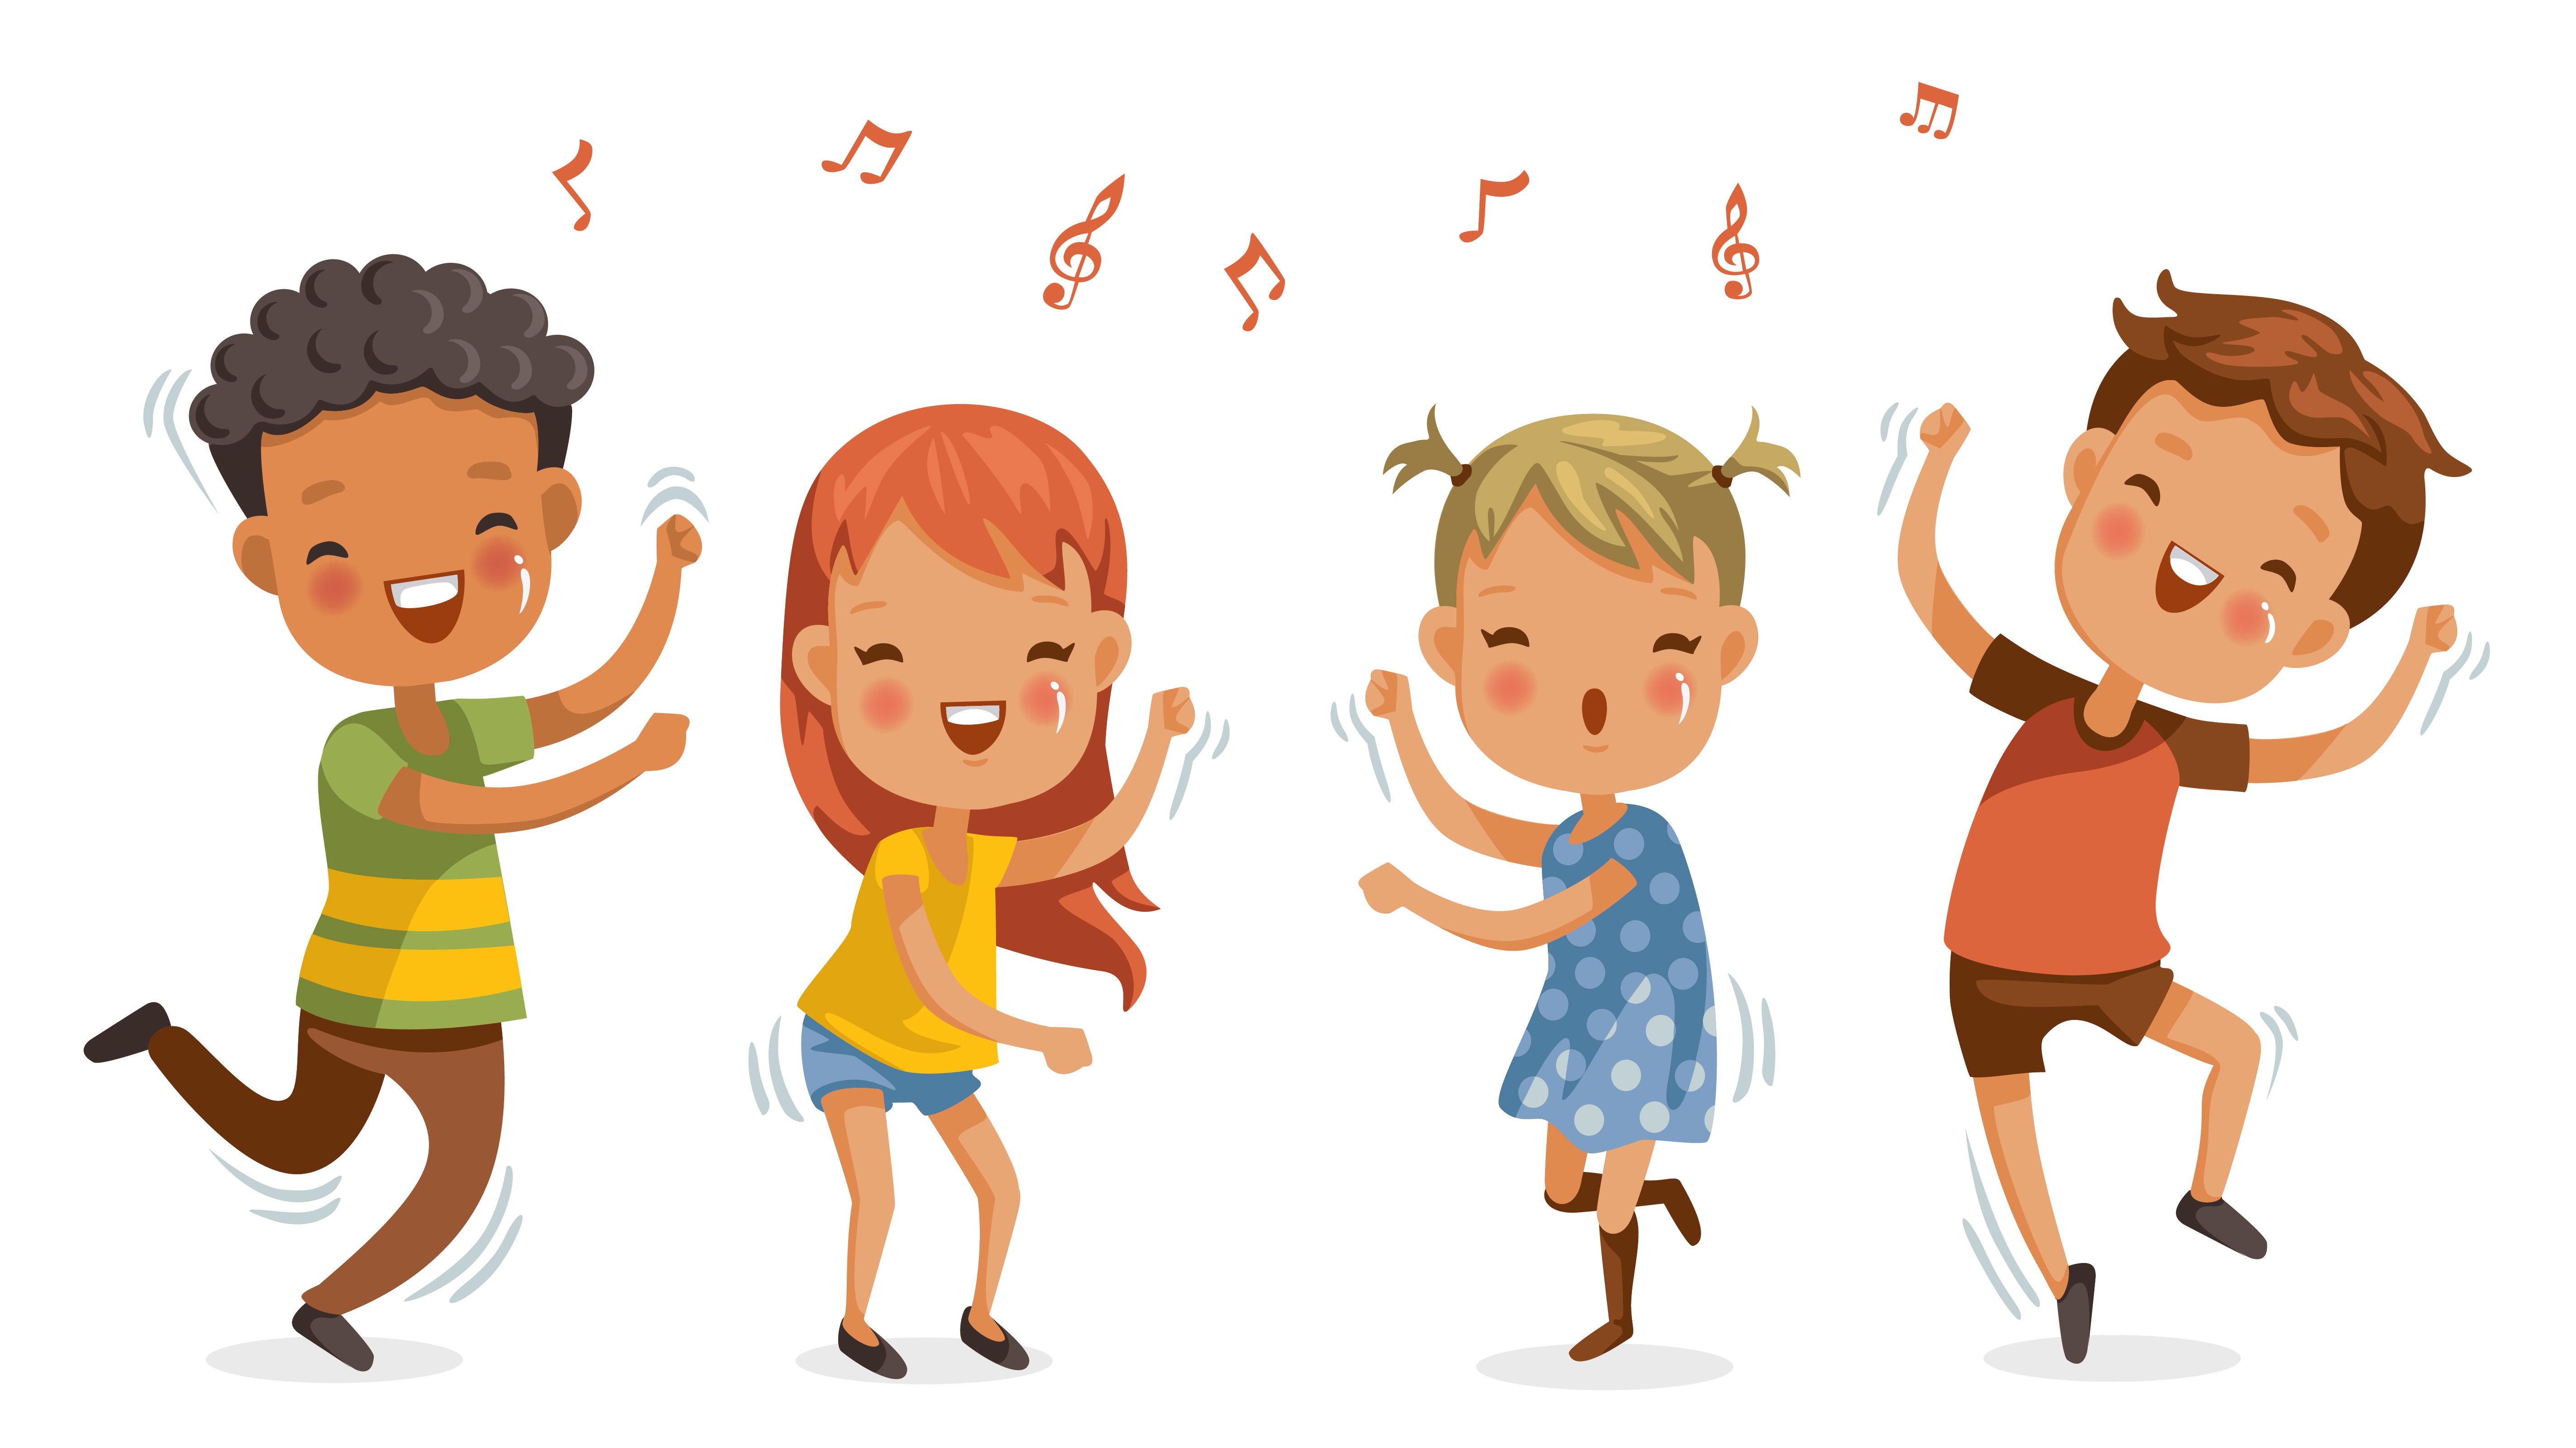 Пою и танцую меньше. Танец рисунок для детей. Детские танцы картинки. Дети рисунок на белом фоне. Девочка и мальчик пляшут.